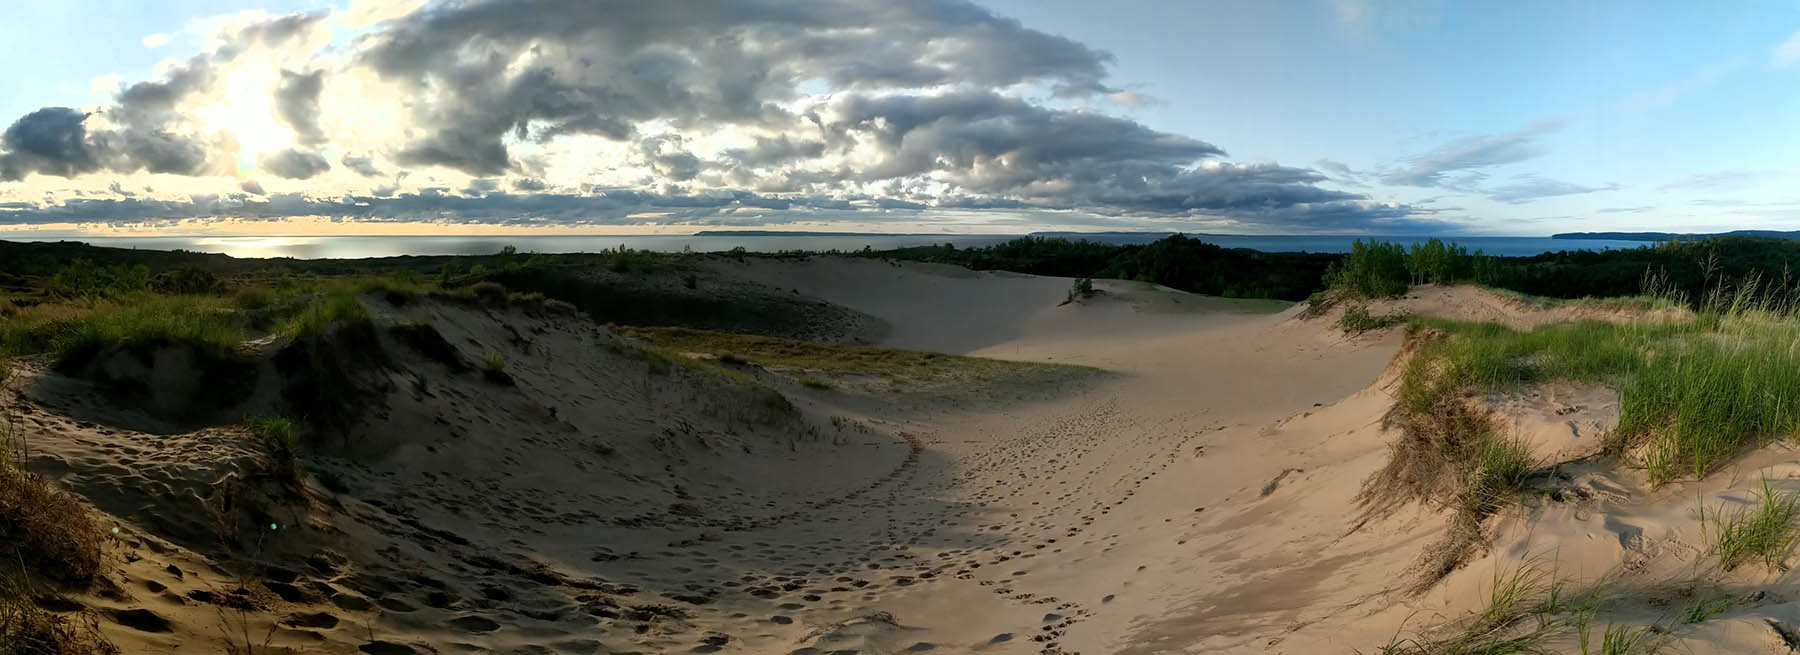 Seeping bear dunes lakesore, glen arbor, Michigan. Panoramic view.